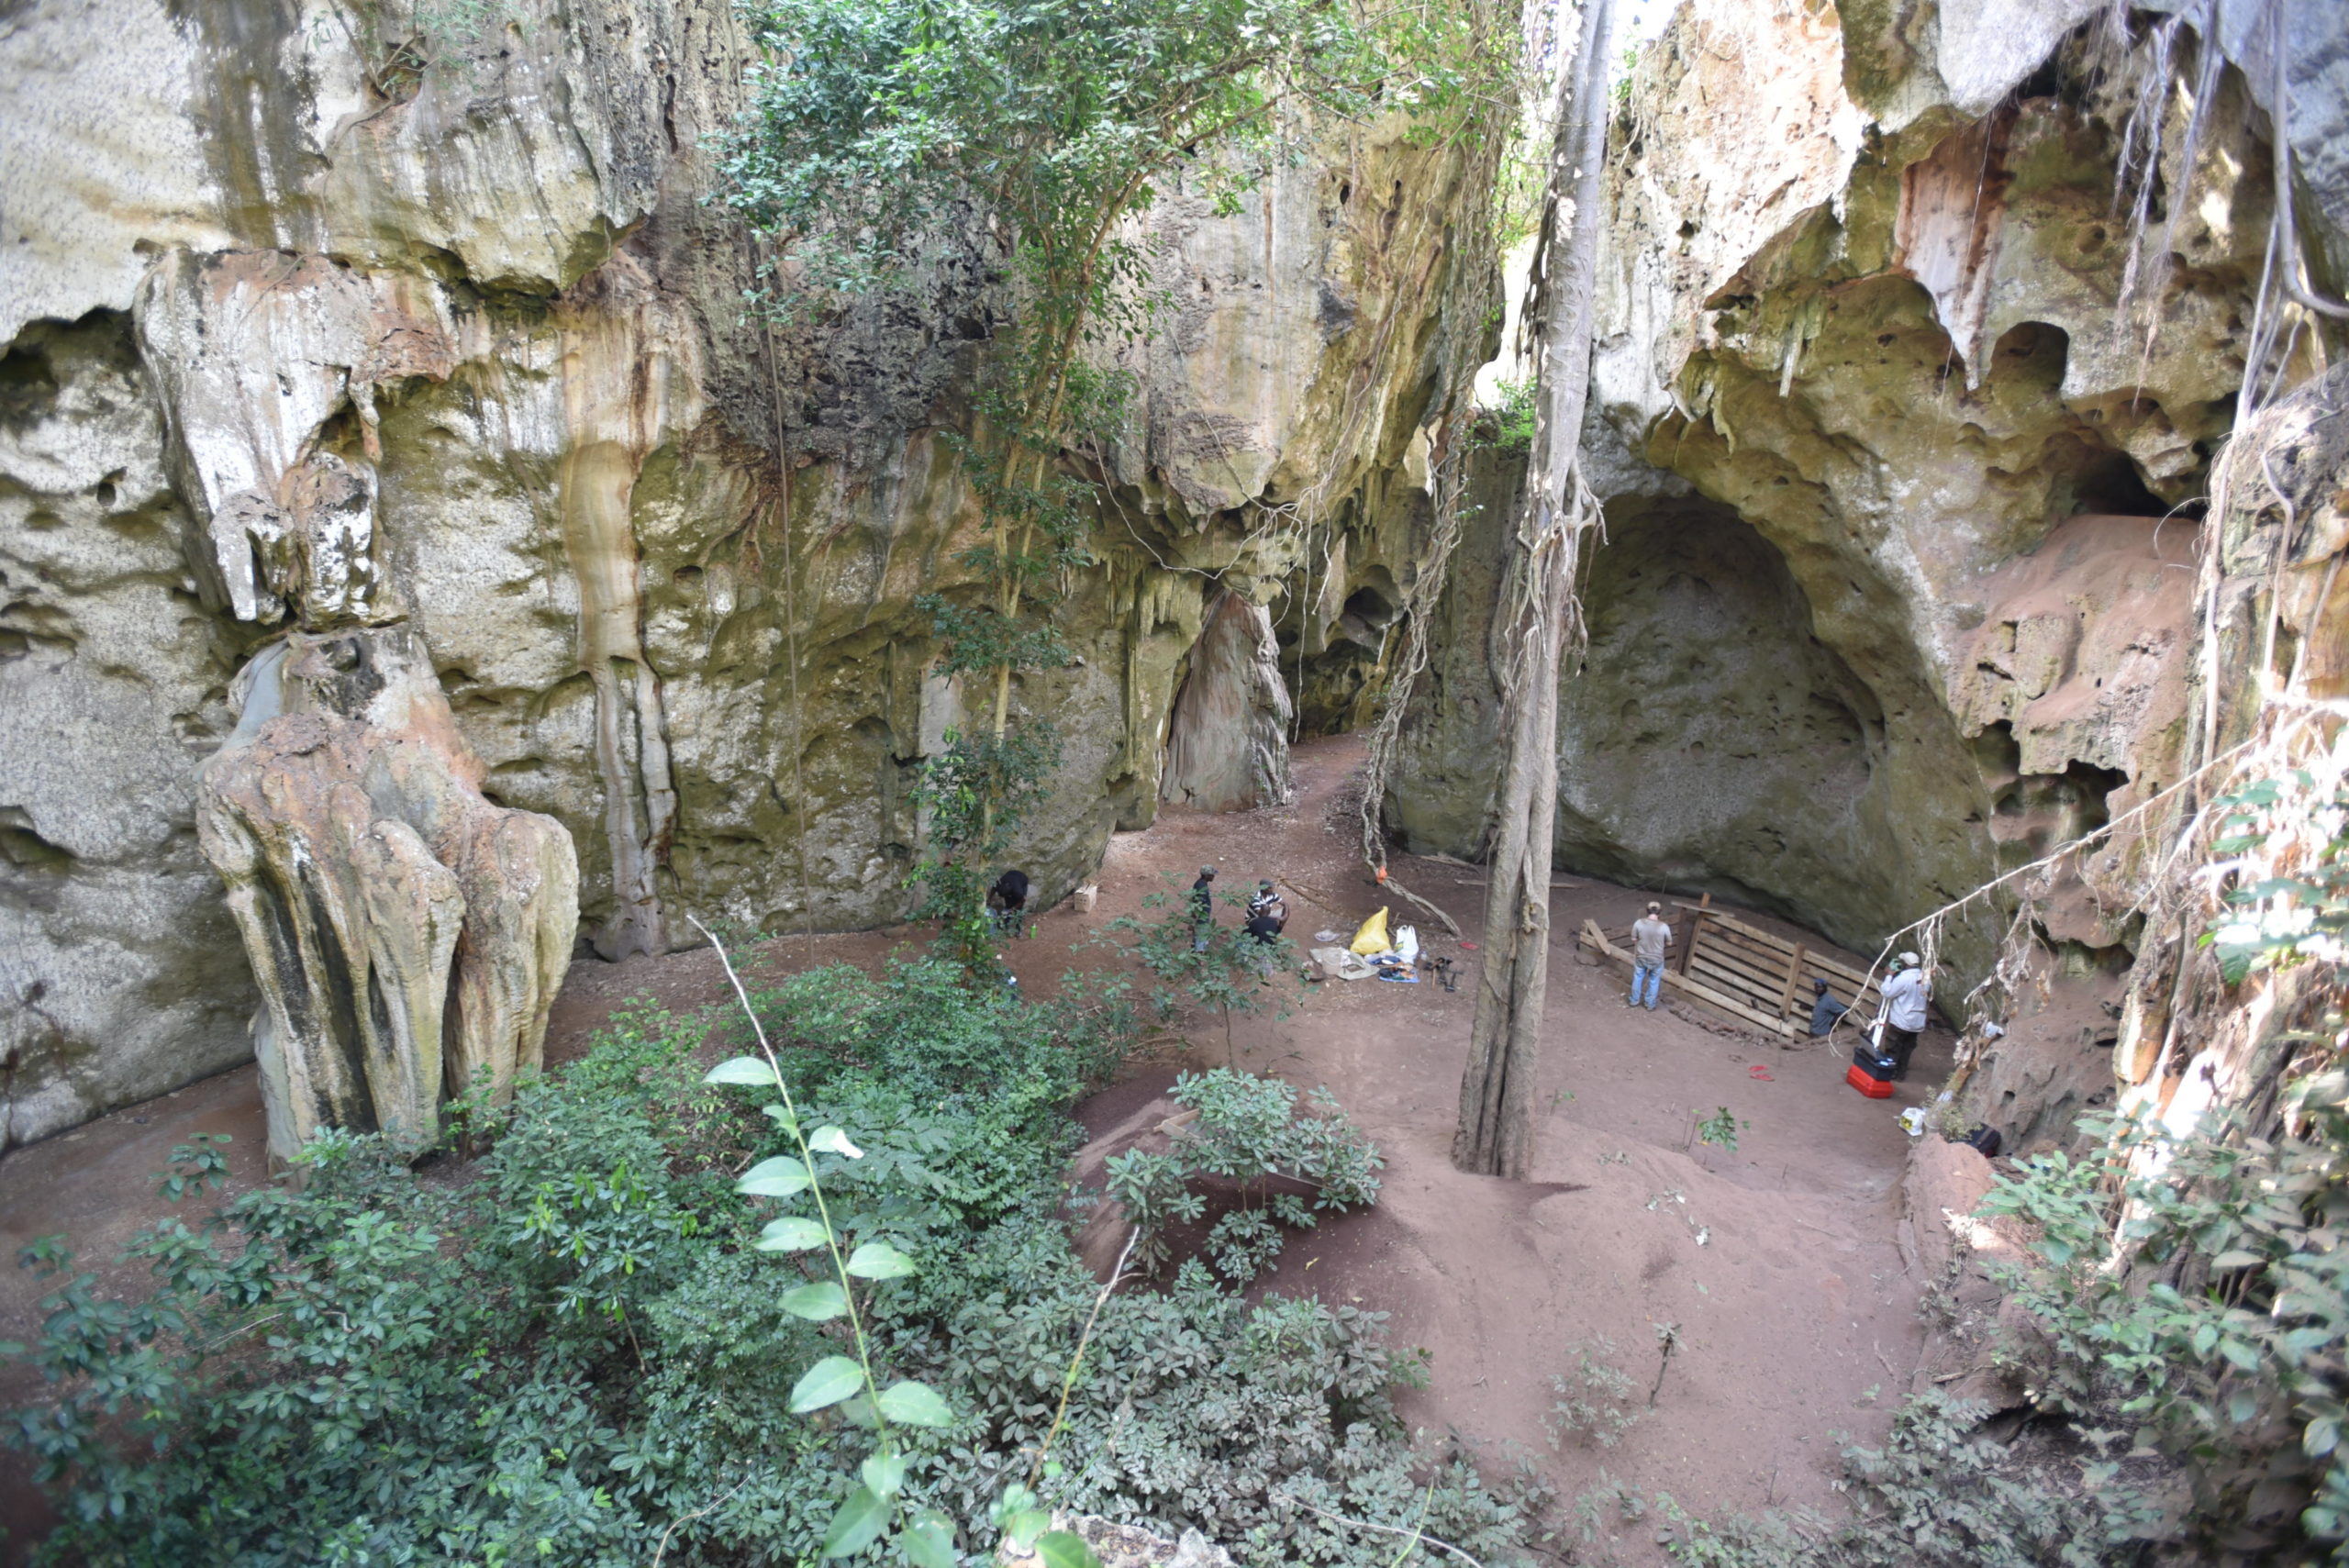 View of the site at Panga ya Saidi cave. (Image: Mohammad Javad Shoaee)